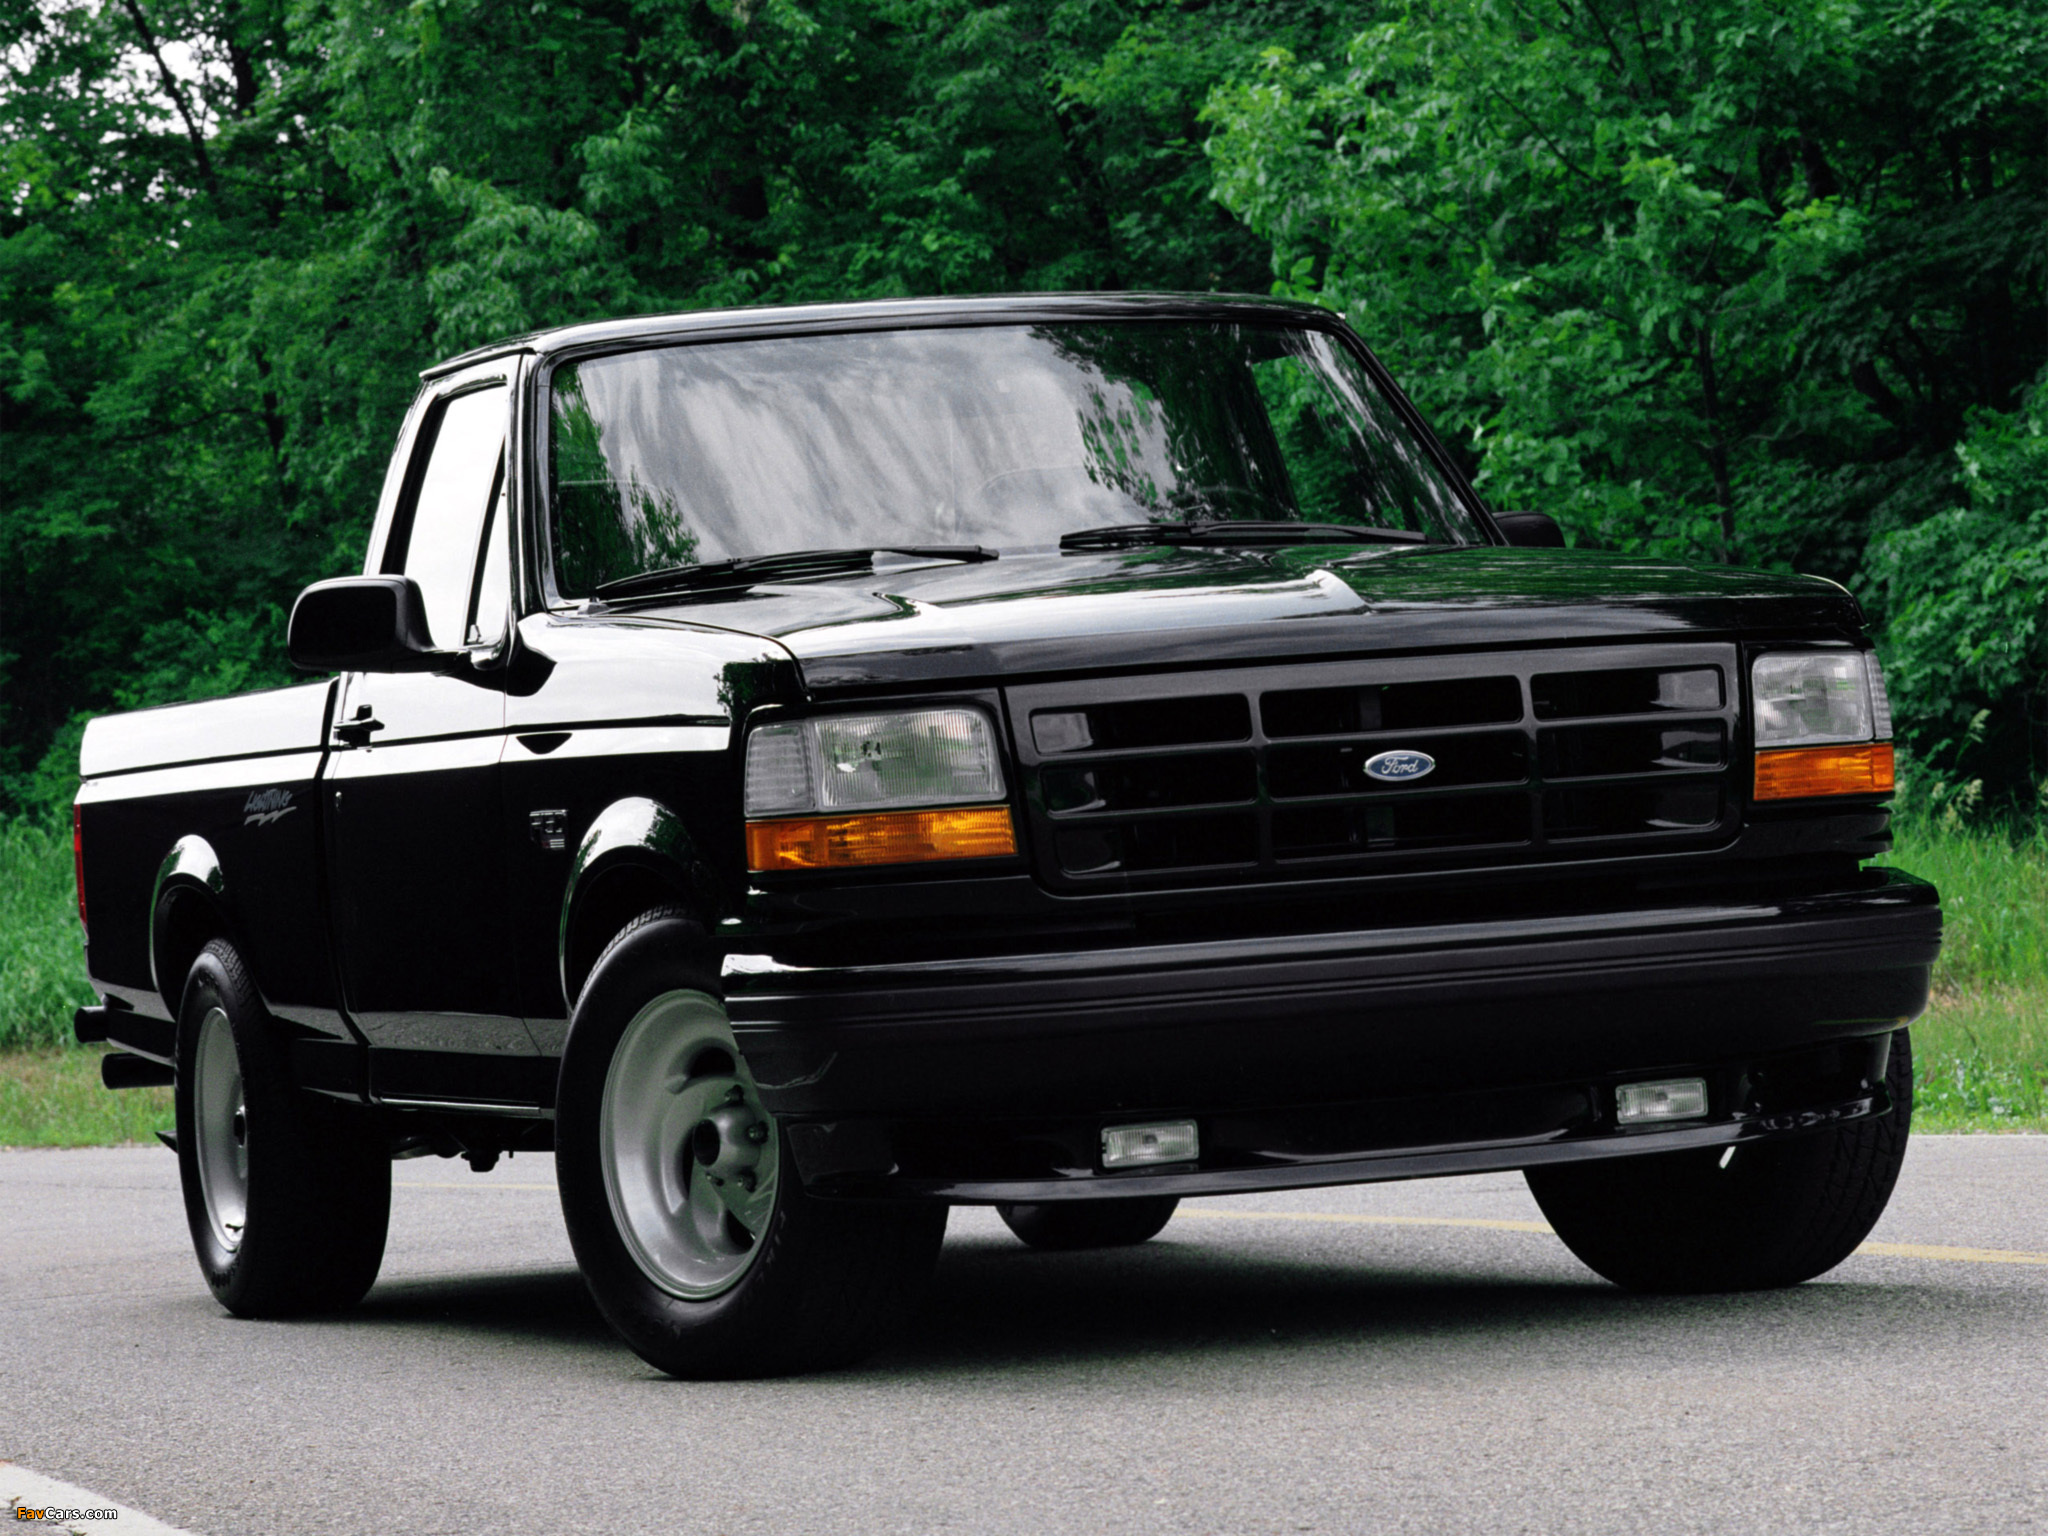 Польский пикап. Ford f150 SVT Lightning 1993. Ford f150 Lightning 1993. Форд ф 150 1993. Ford f-150 SVT Lightning 1993 года..